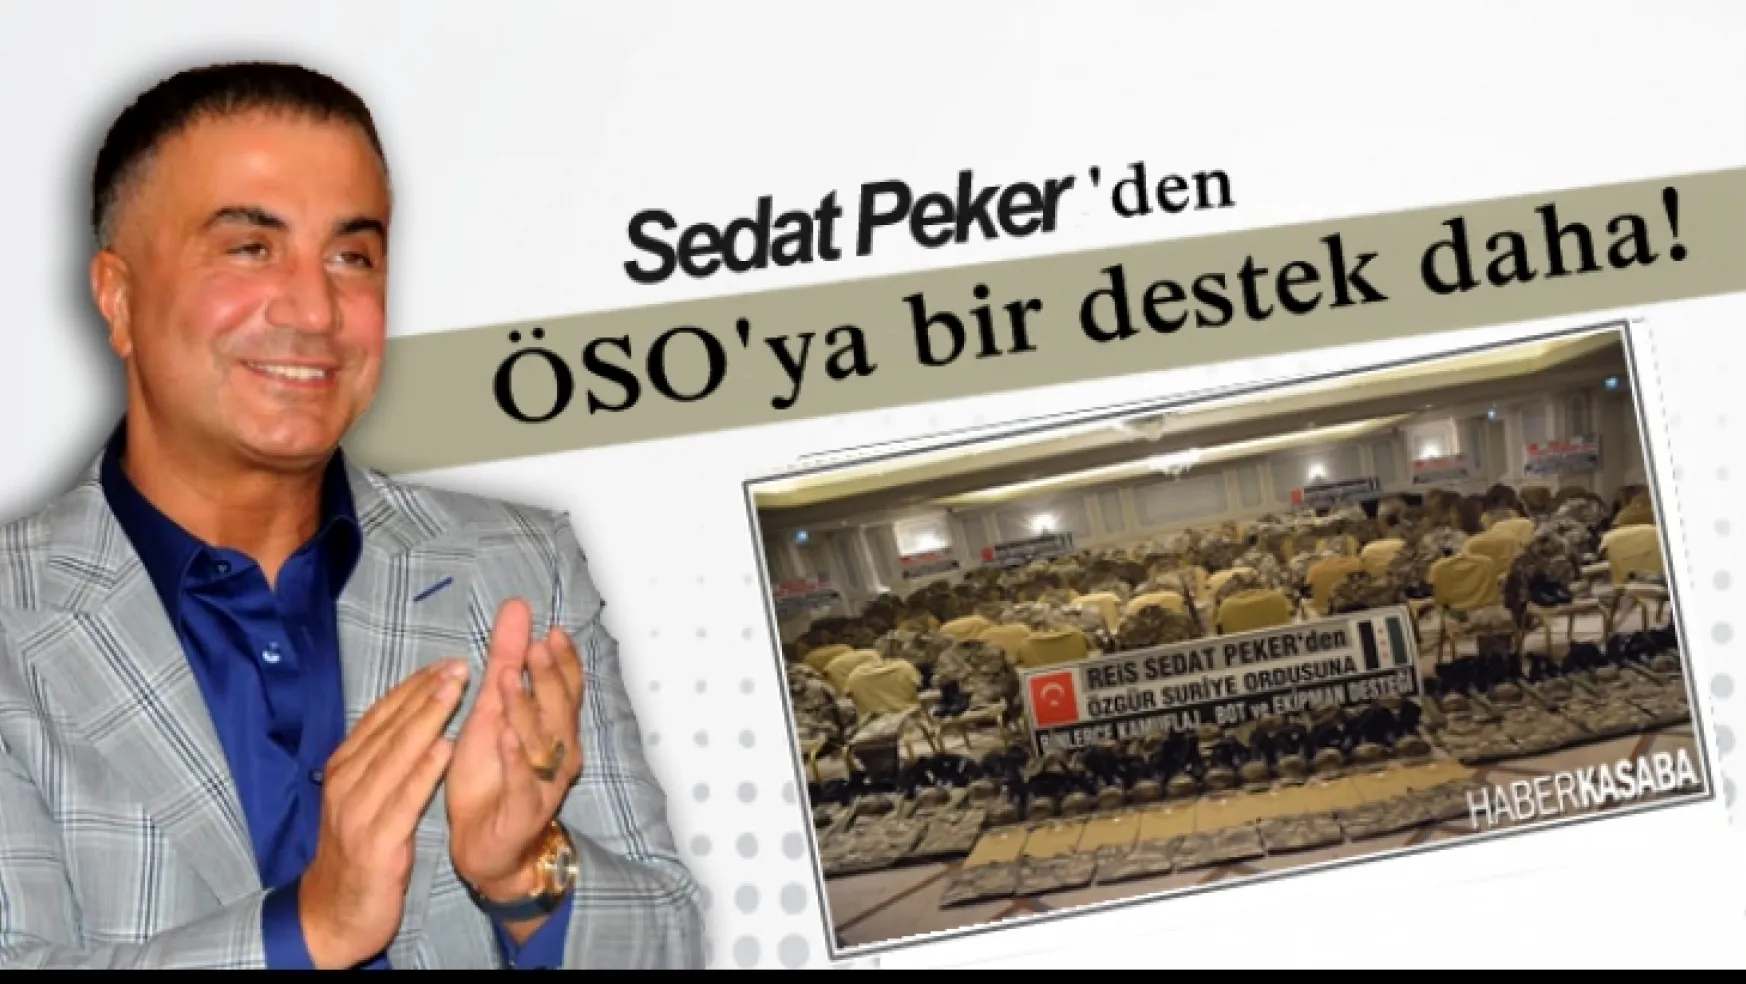 Sedat Peker'den ÖSO'ya yeni bir destek daha!